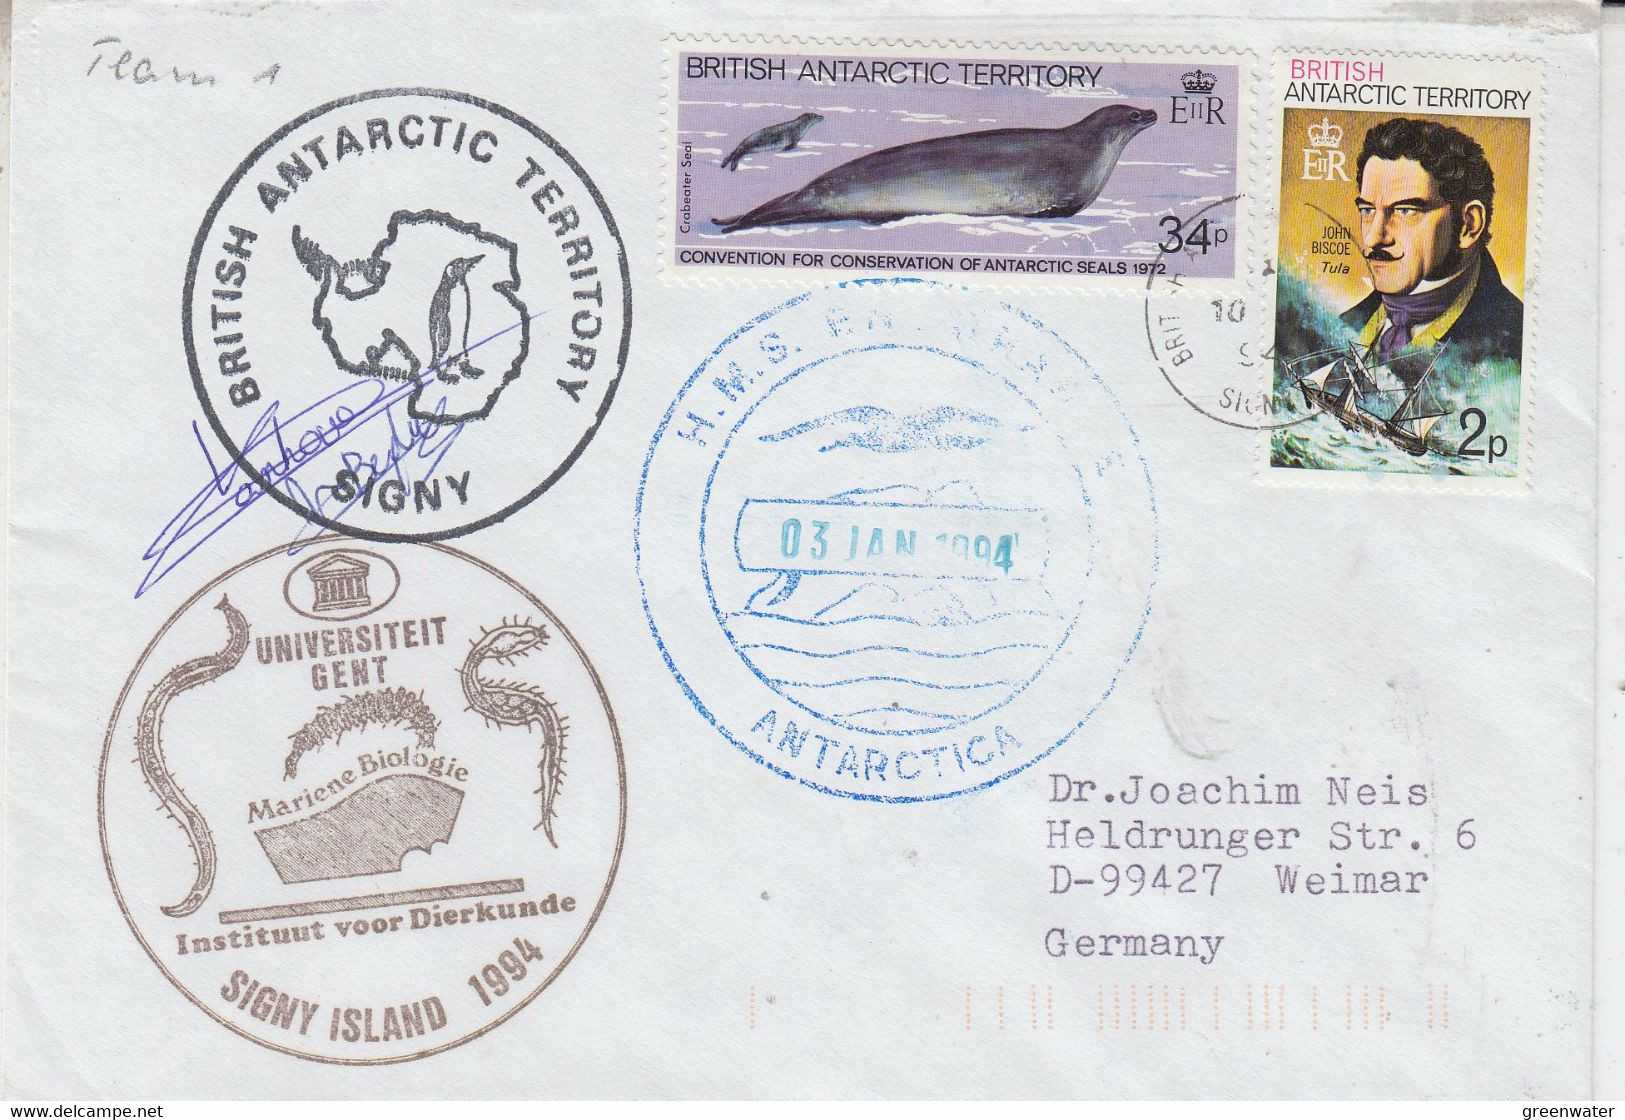 British Antarctic Territory (BAT) Ca Uniseriteit Gent 2 Signatures  Cover  Ca Signy 10 JAN 1992 (AT179) - Covers & Documents